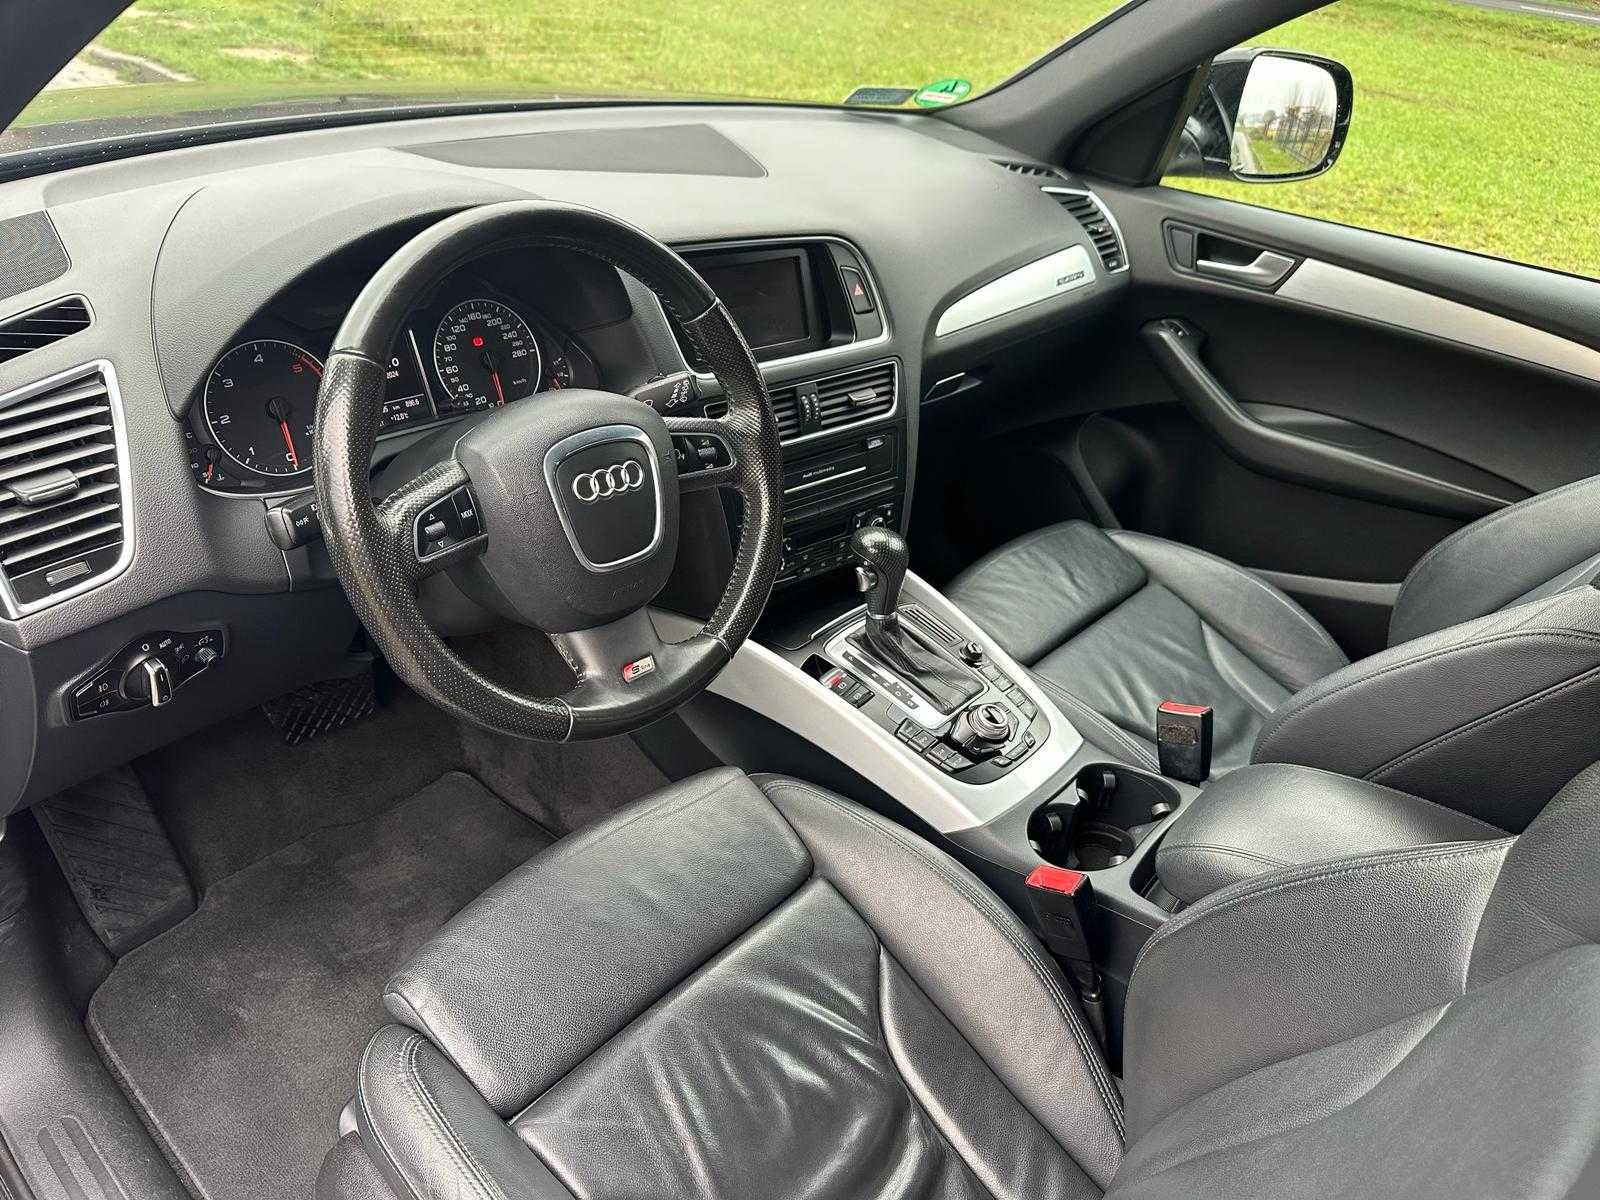 Audi Q5 2.0 TDI super stan i wyposażenie